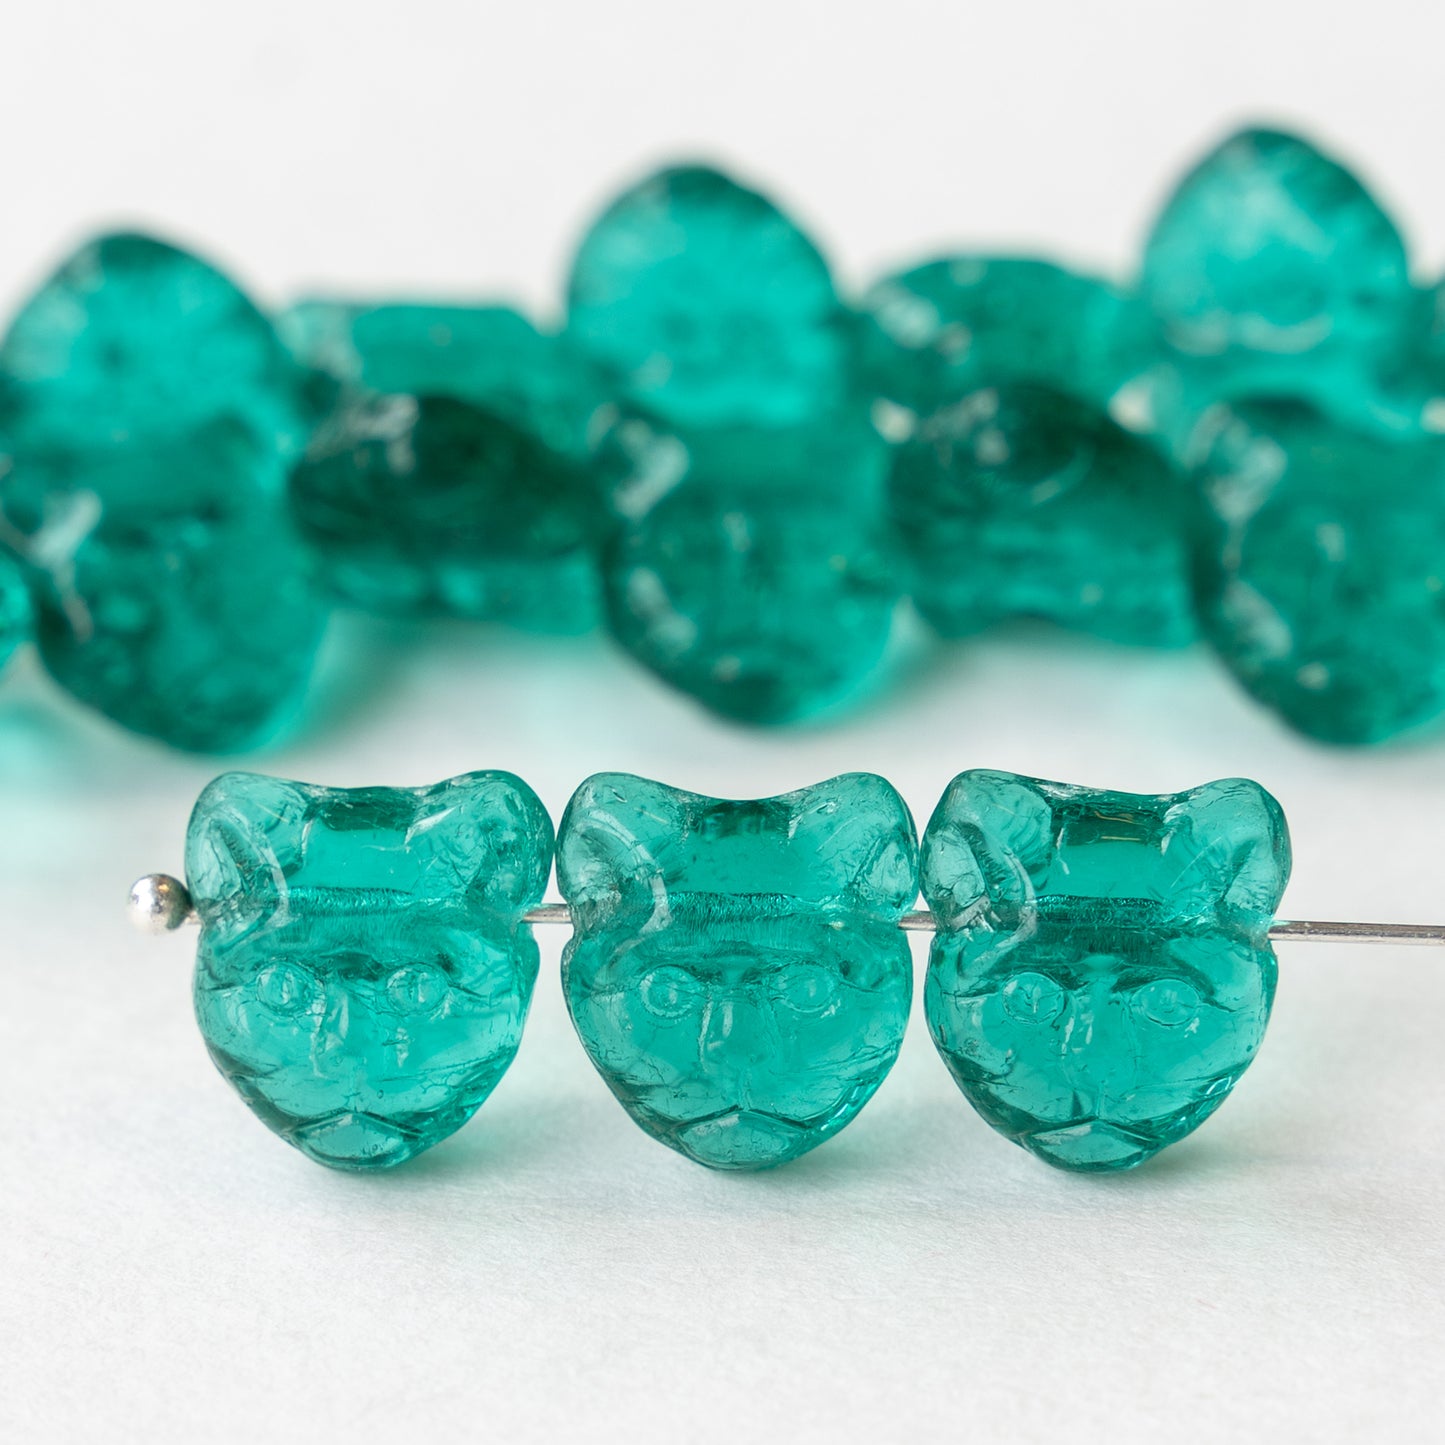 11mm Glass Cat Beads - Transparent Emerald Green - 11 Beads